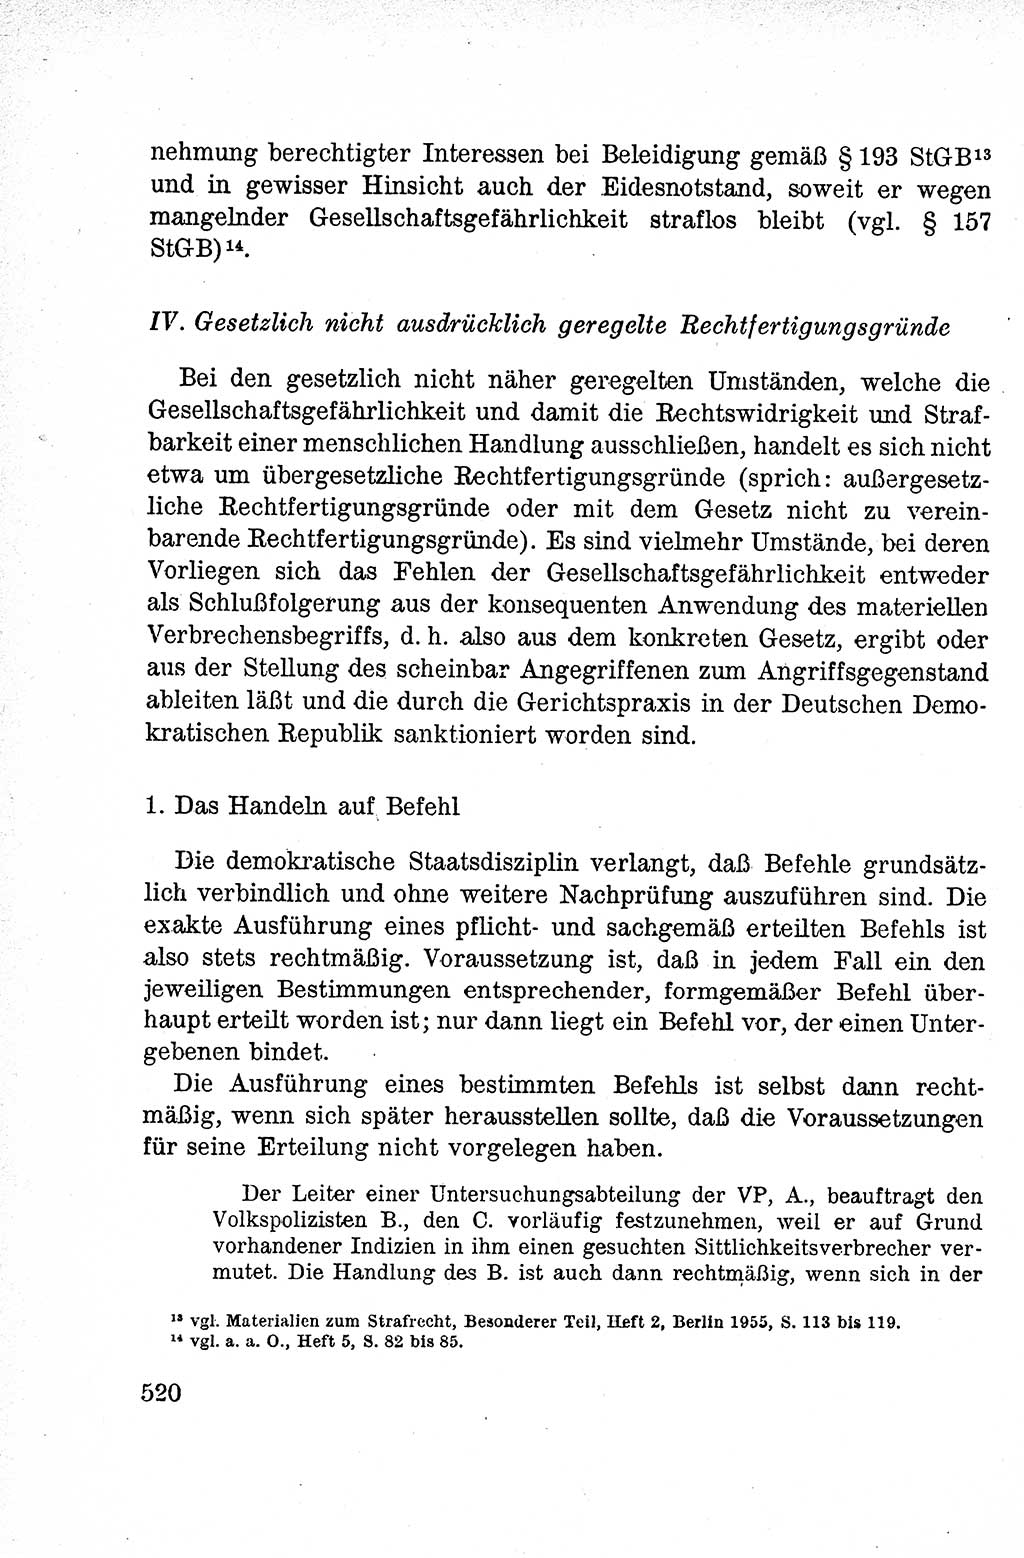 Lehrbuch des Strafrechts der Deutschen Demokratischen Republik (DDR), Allgemeiner Teil 1959, Seite 520 (Lb. Strafr. DDR AT 1959, S. 520)